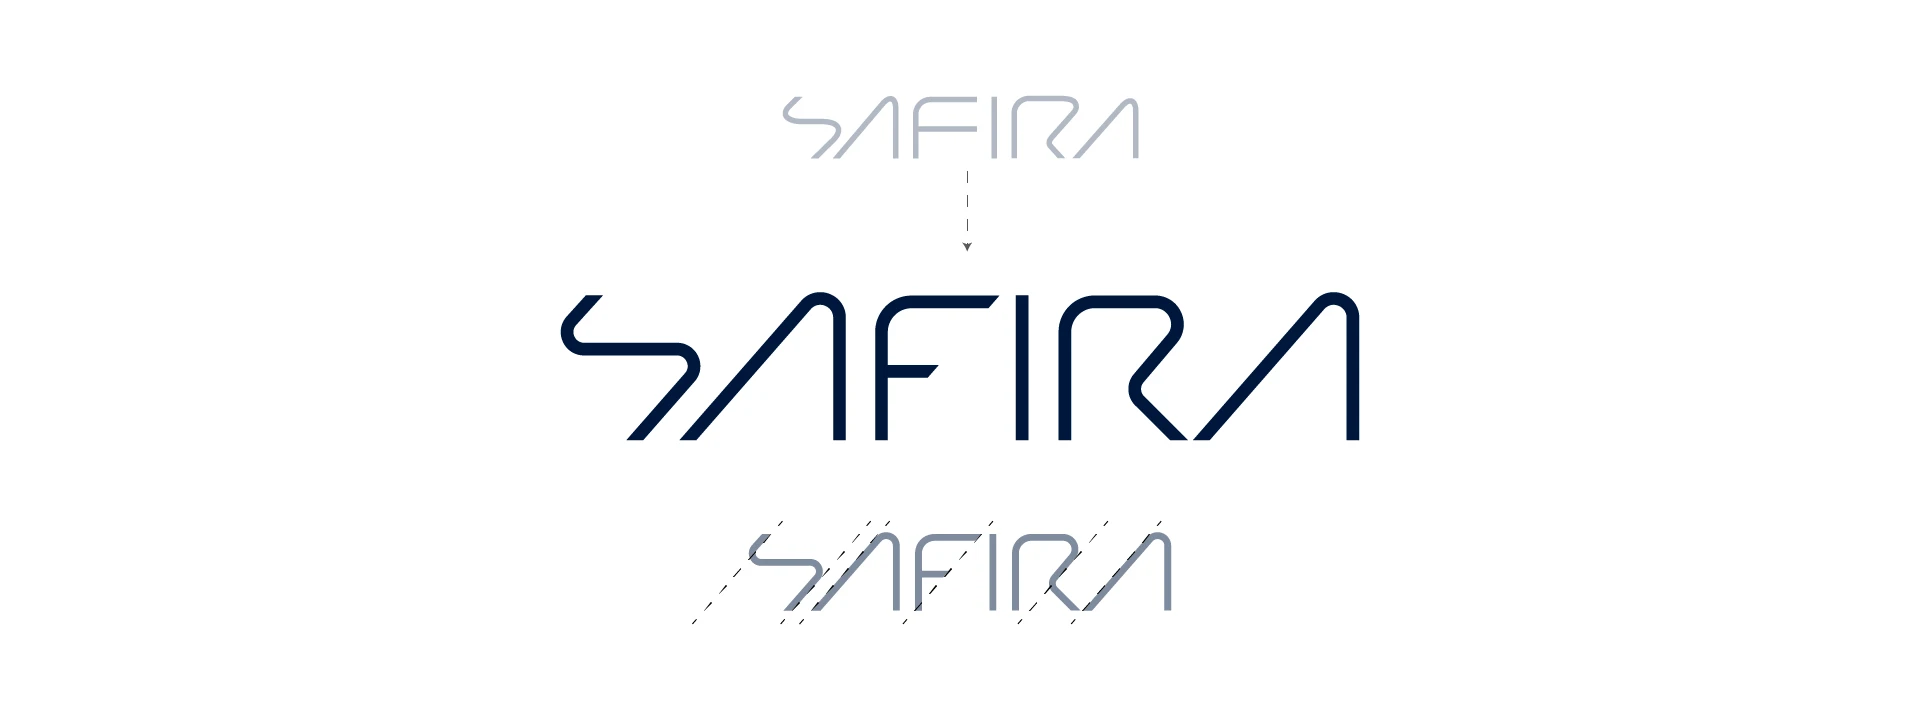 safira_3.3